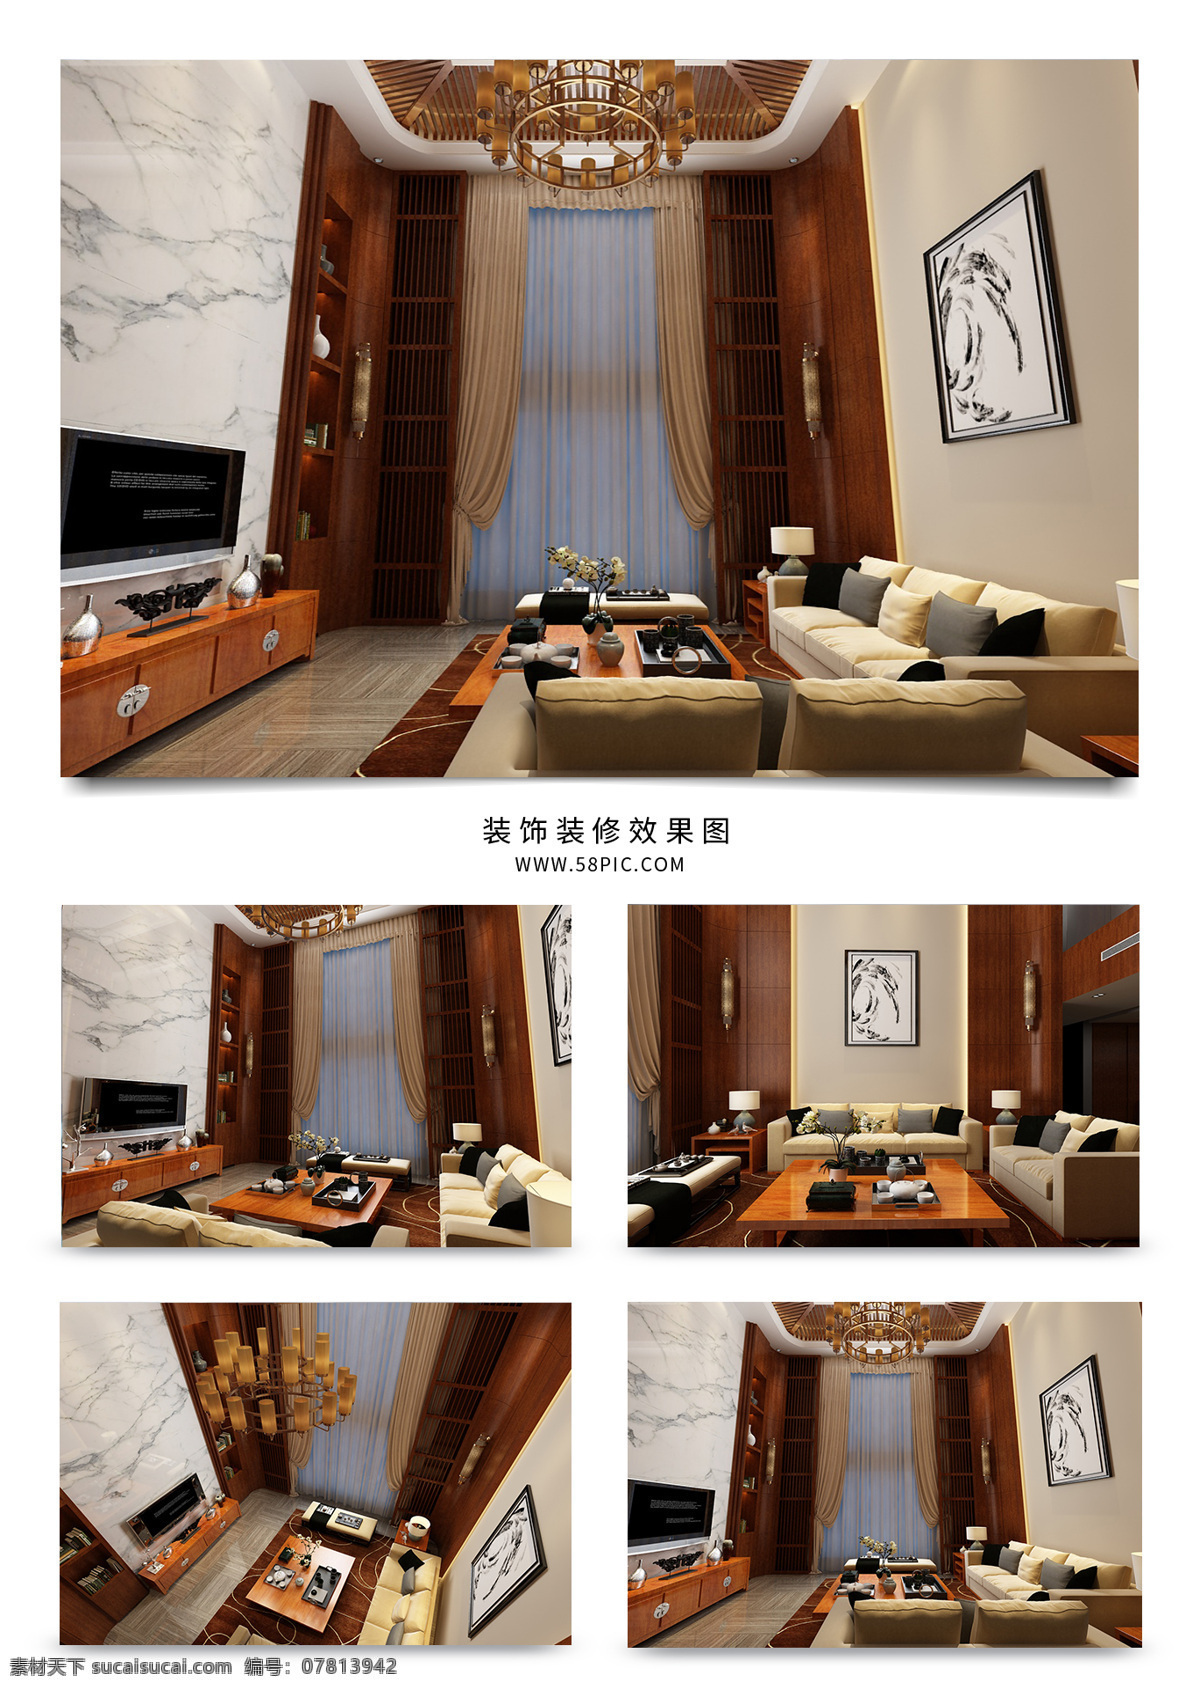 中式 复式 客厅 装修 效果图 赏析 大理石 挂画 工艺品 窗帘 落地窗 组合沙发 组合电视柜